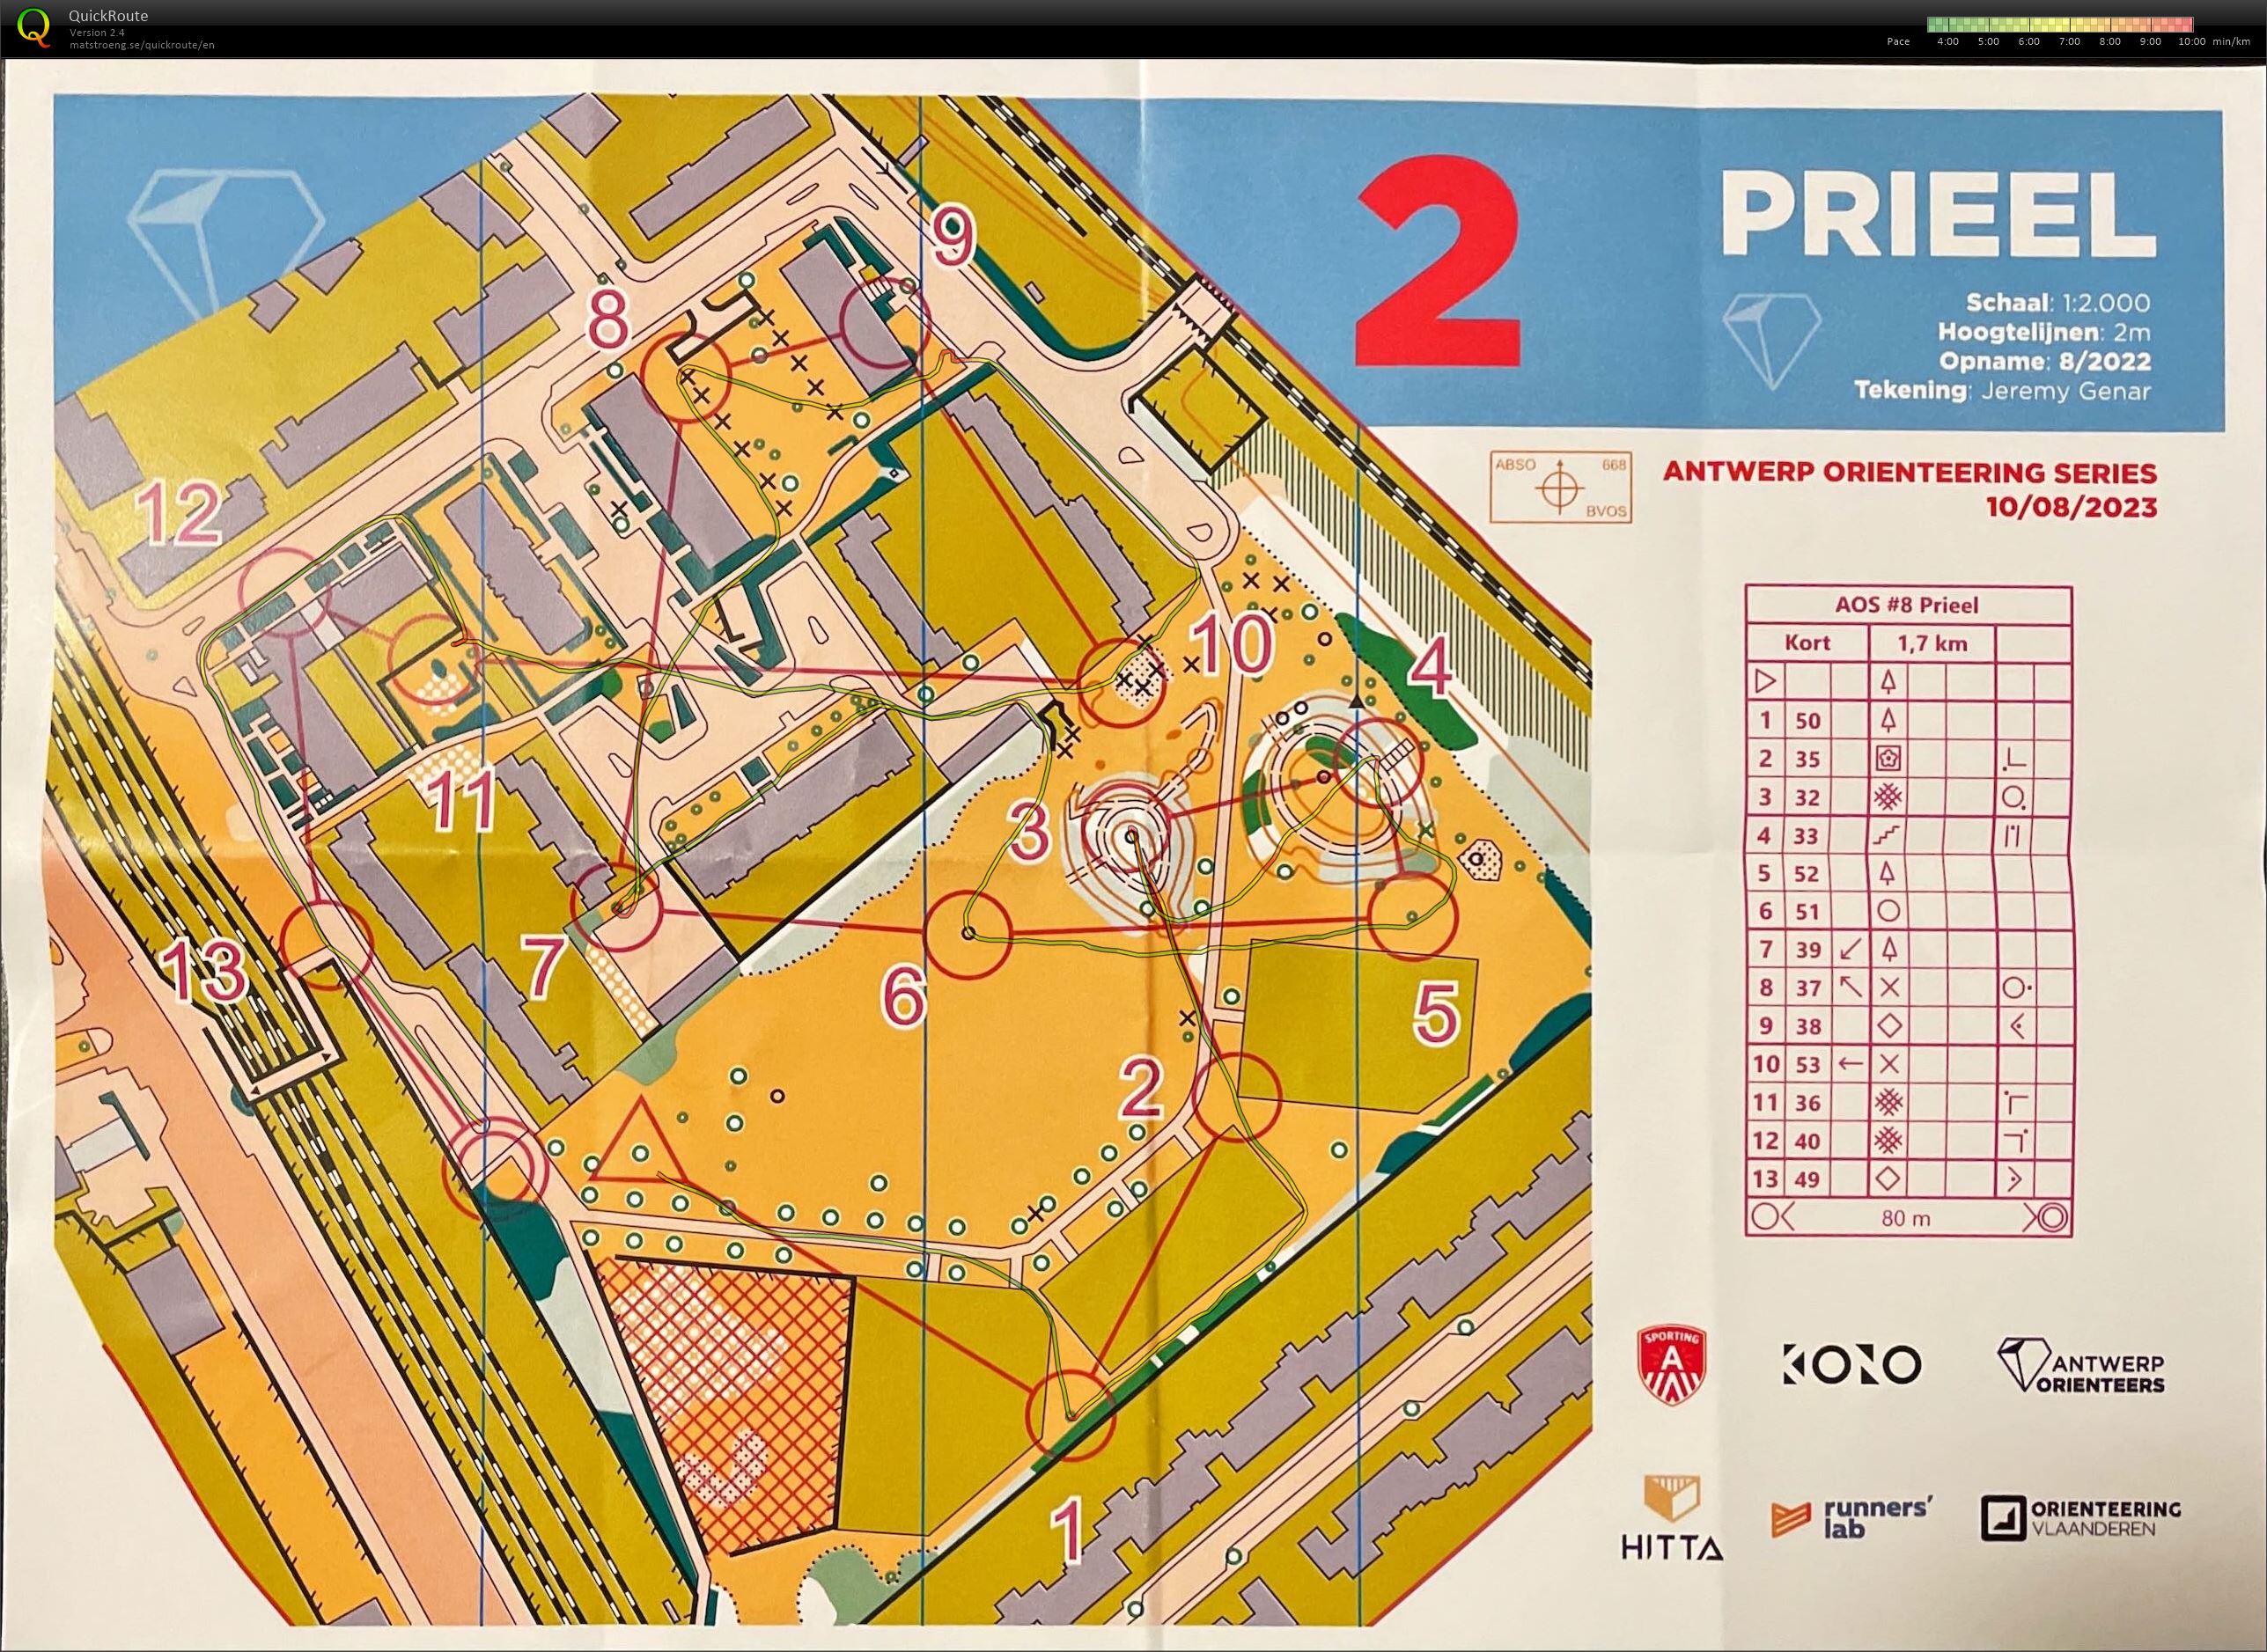 Antwerp Orienteering Series - Prieel - Kort (10/08/2023)